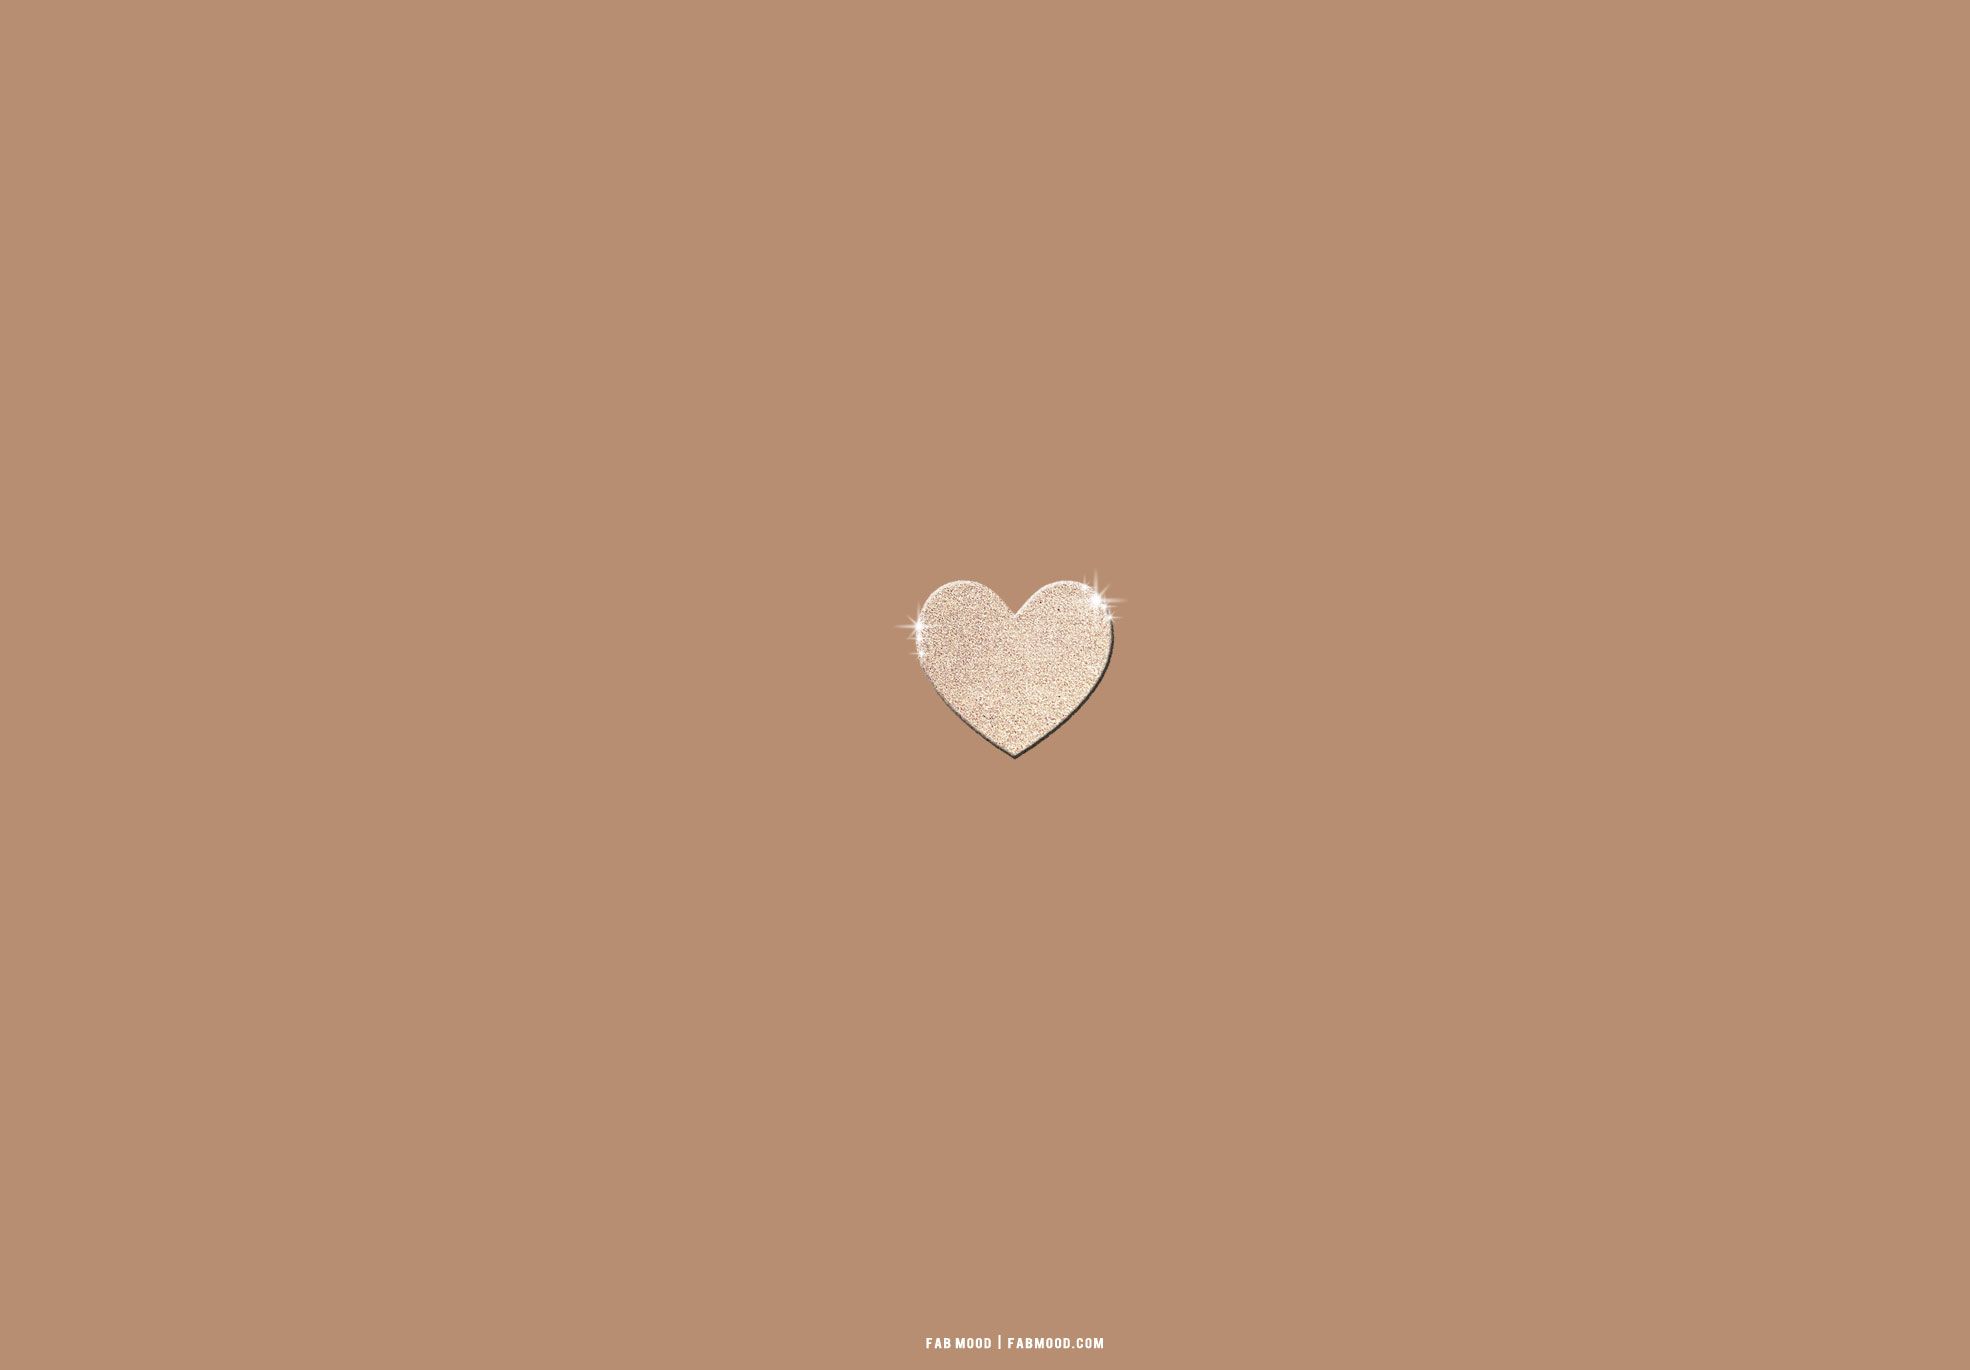  Erfolg Hintergrundbild 1970x1370. Brown Aesthetic Wallpaper for Laptop : Glitter Love Heart